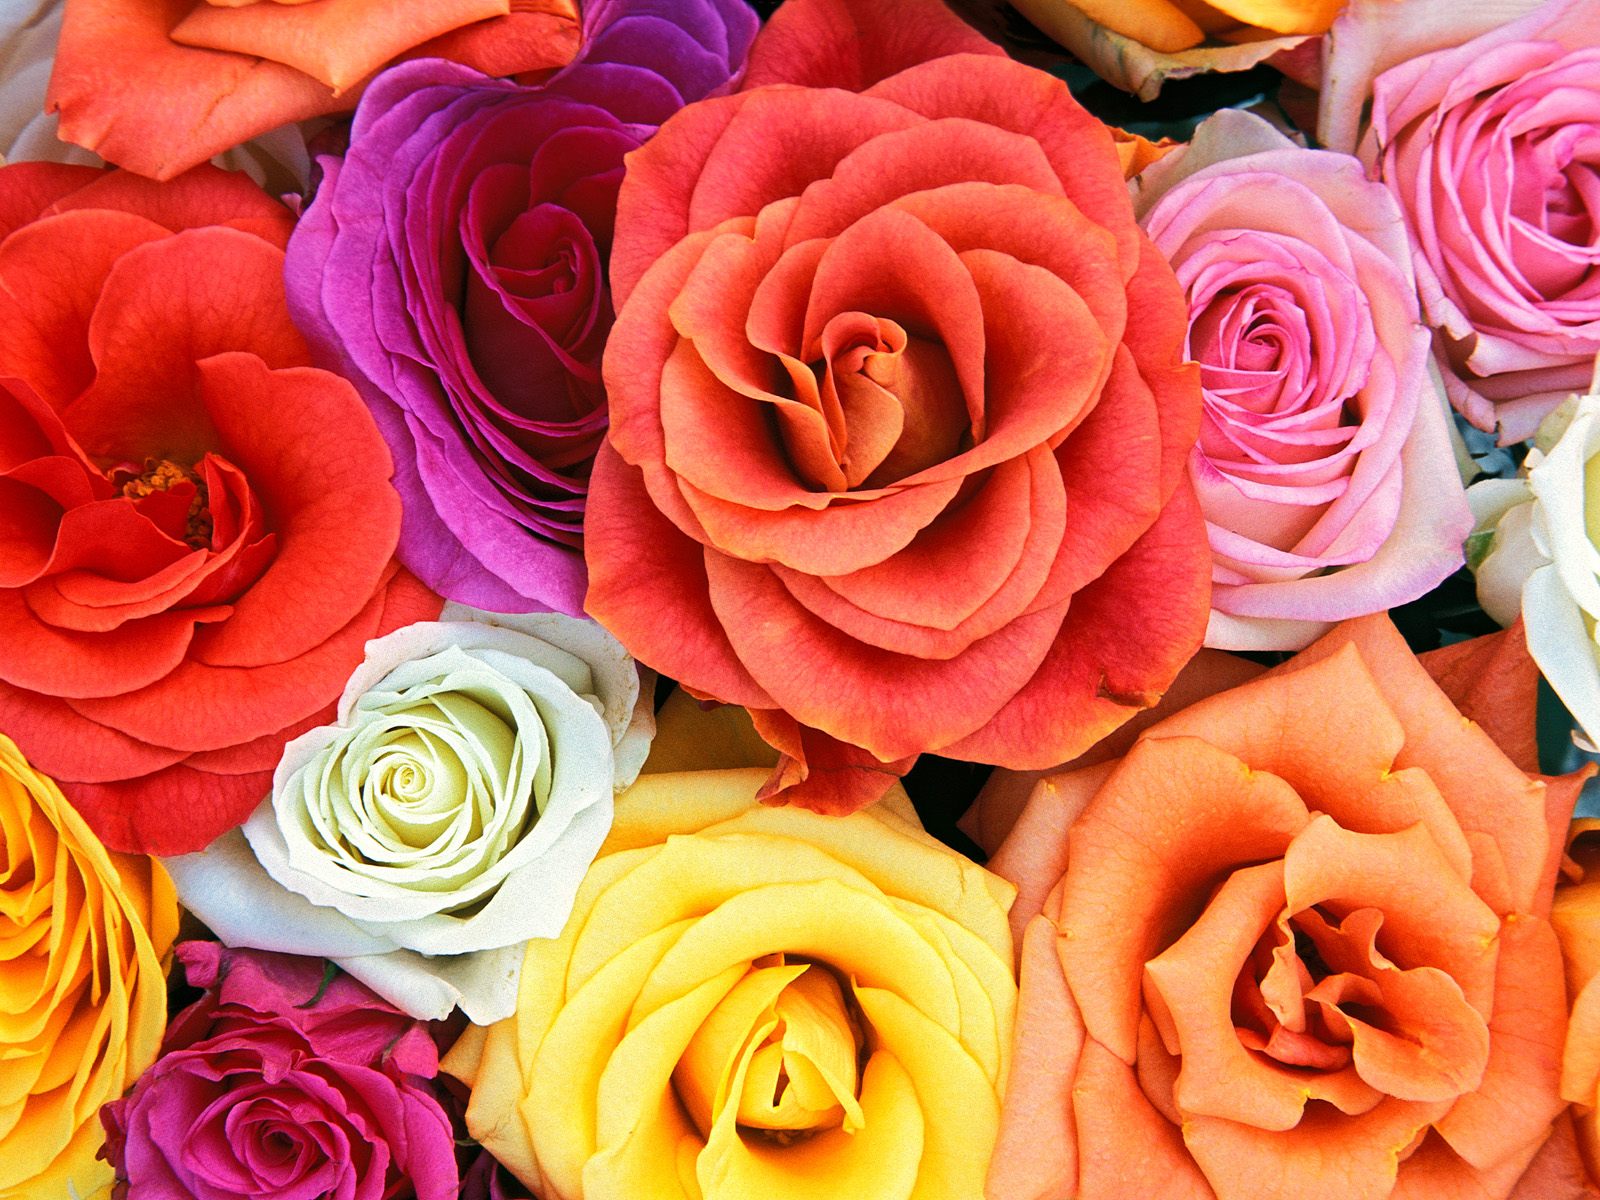 Gambar Bunga Mawar Ucapan Selamat Pagi - Gambarrrrrrr